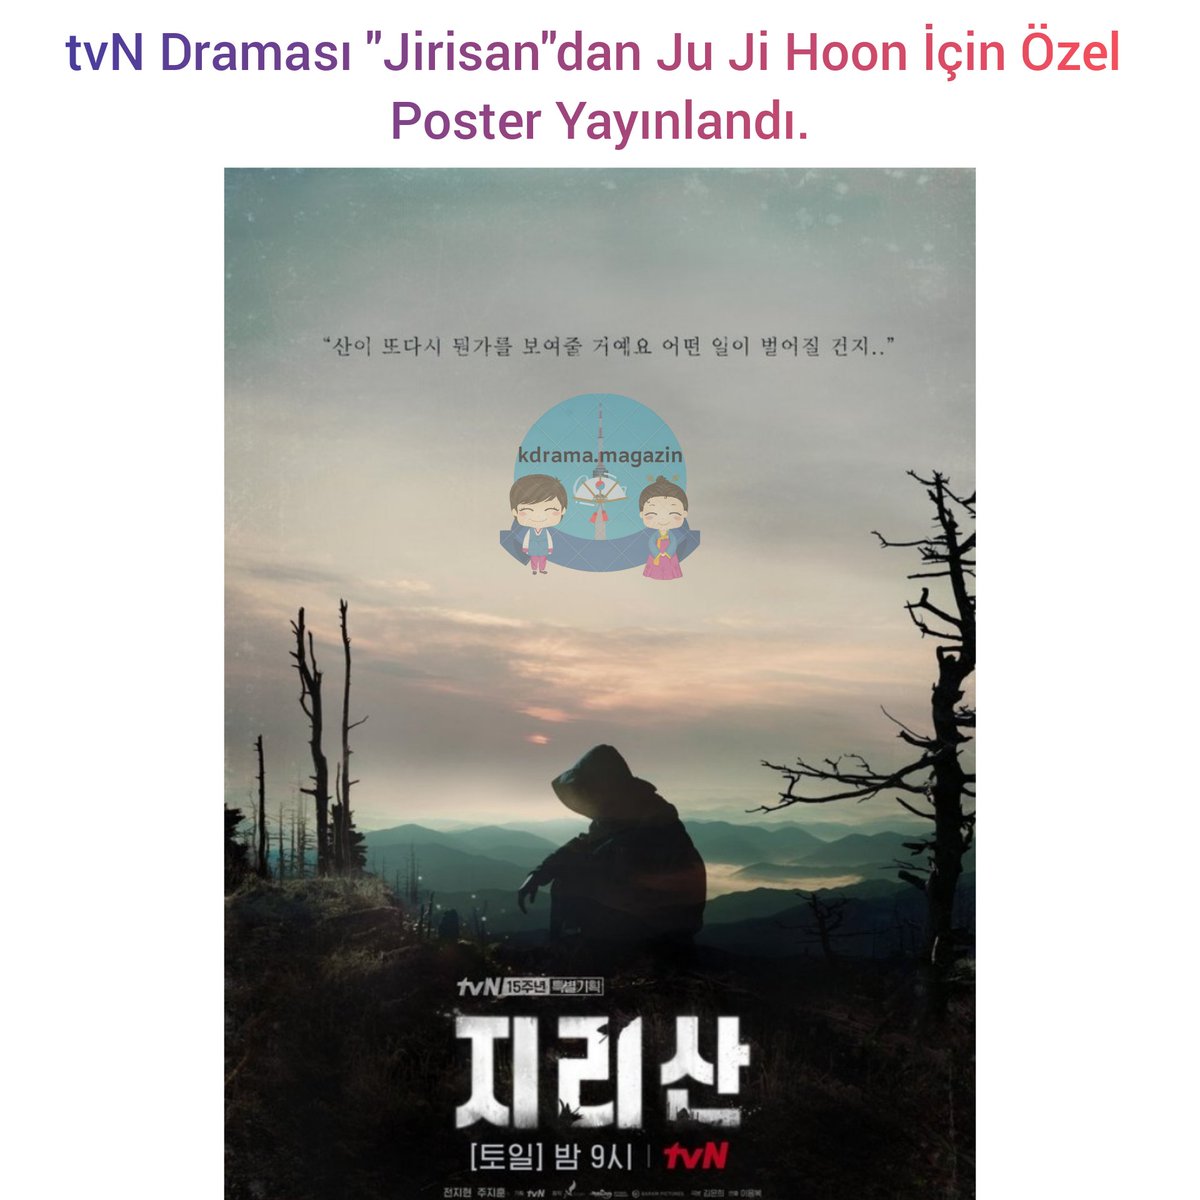 tvN Draması #Jirisan'dan #JuJiHoon İçin Özel Poster Yayınlandı. 

#JunJiHyun #SungDongIl #OhJungSe #GoMinSi #JeonSeokHo